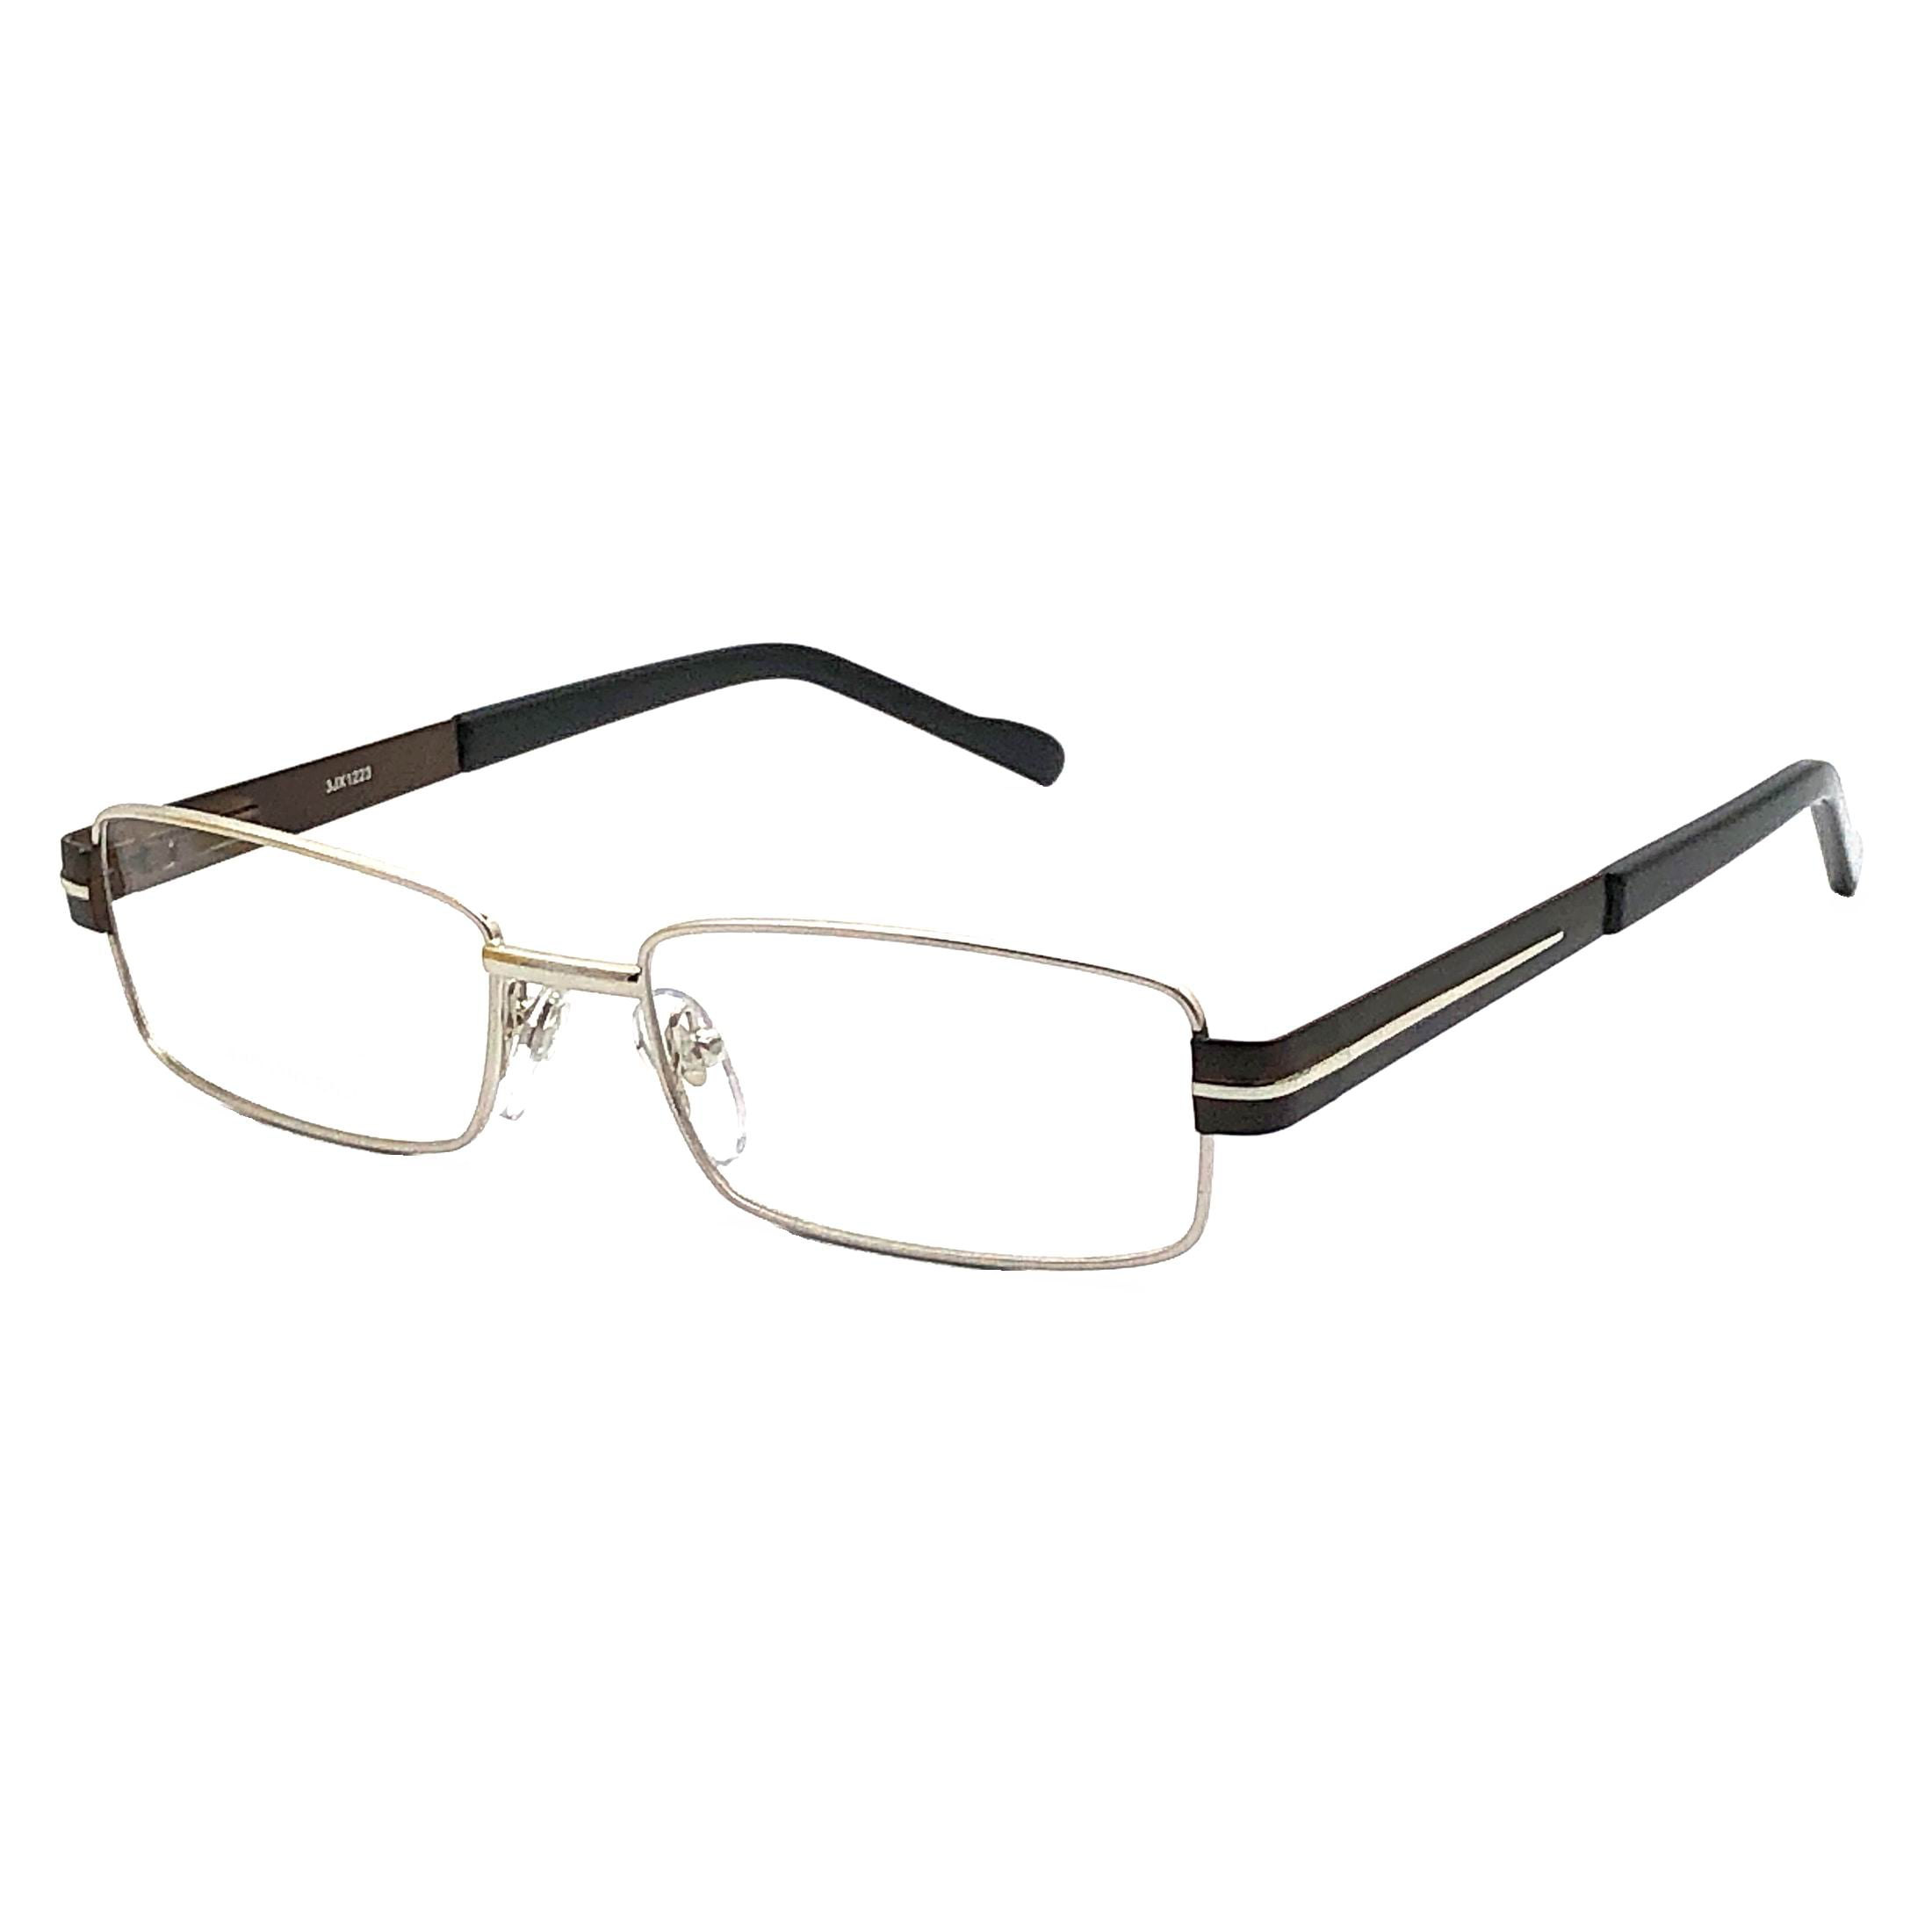 Contour Mens Prescription Glasses, Fm9214 Shiny Silver, Size: One Size